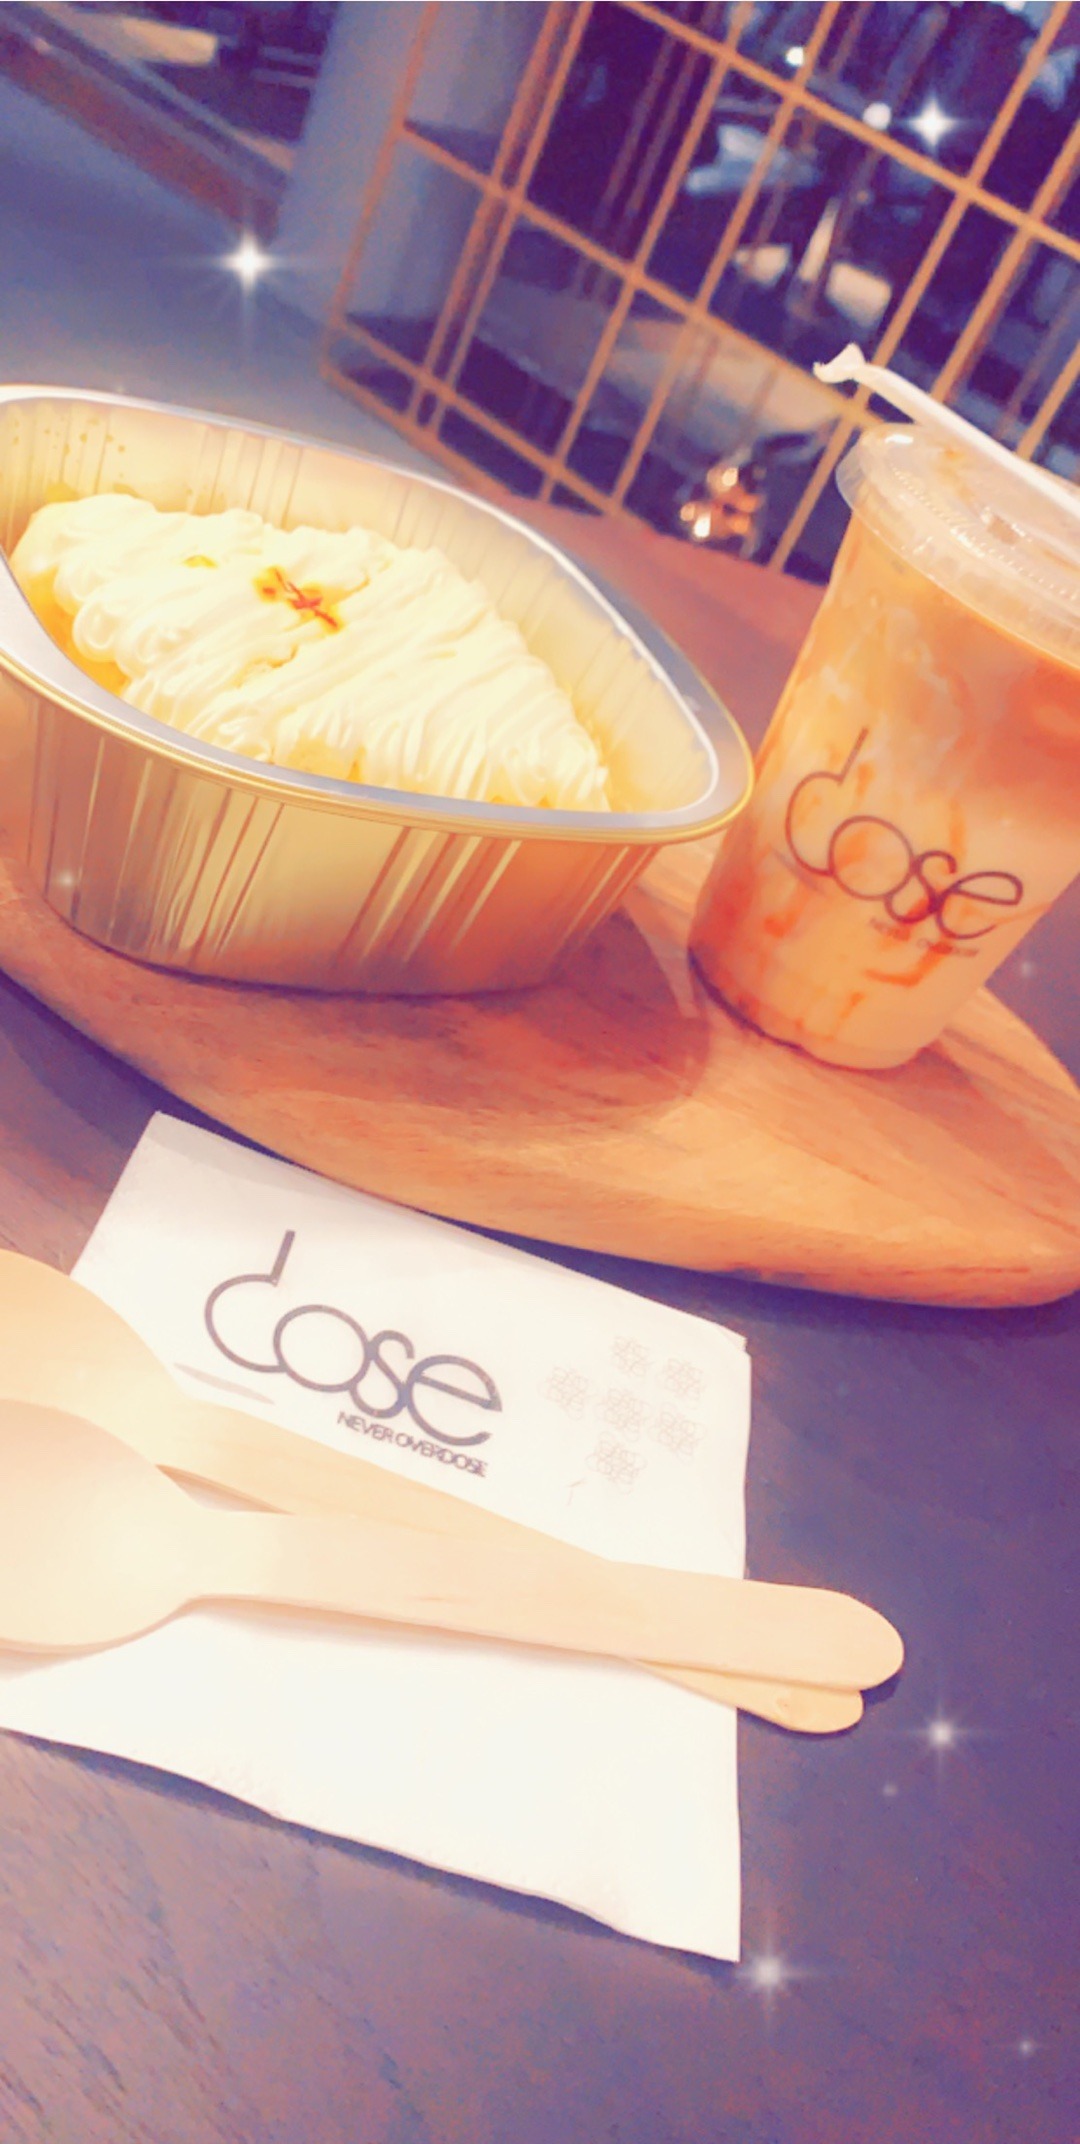 Dose ❤️ @ Dose Cafe - Bahrain